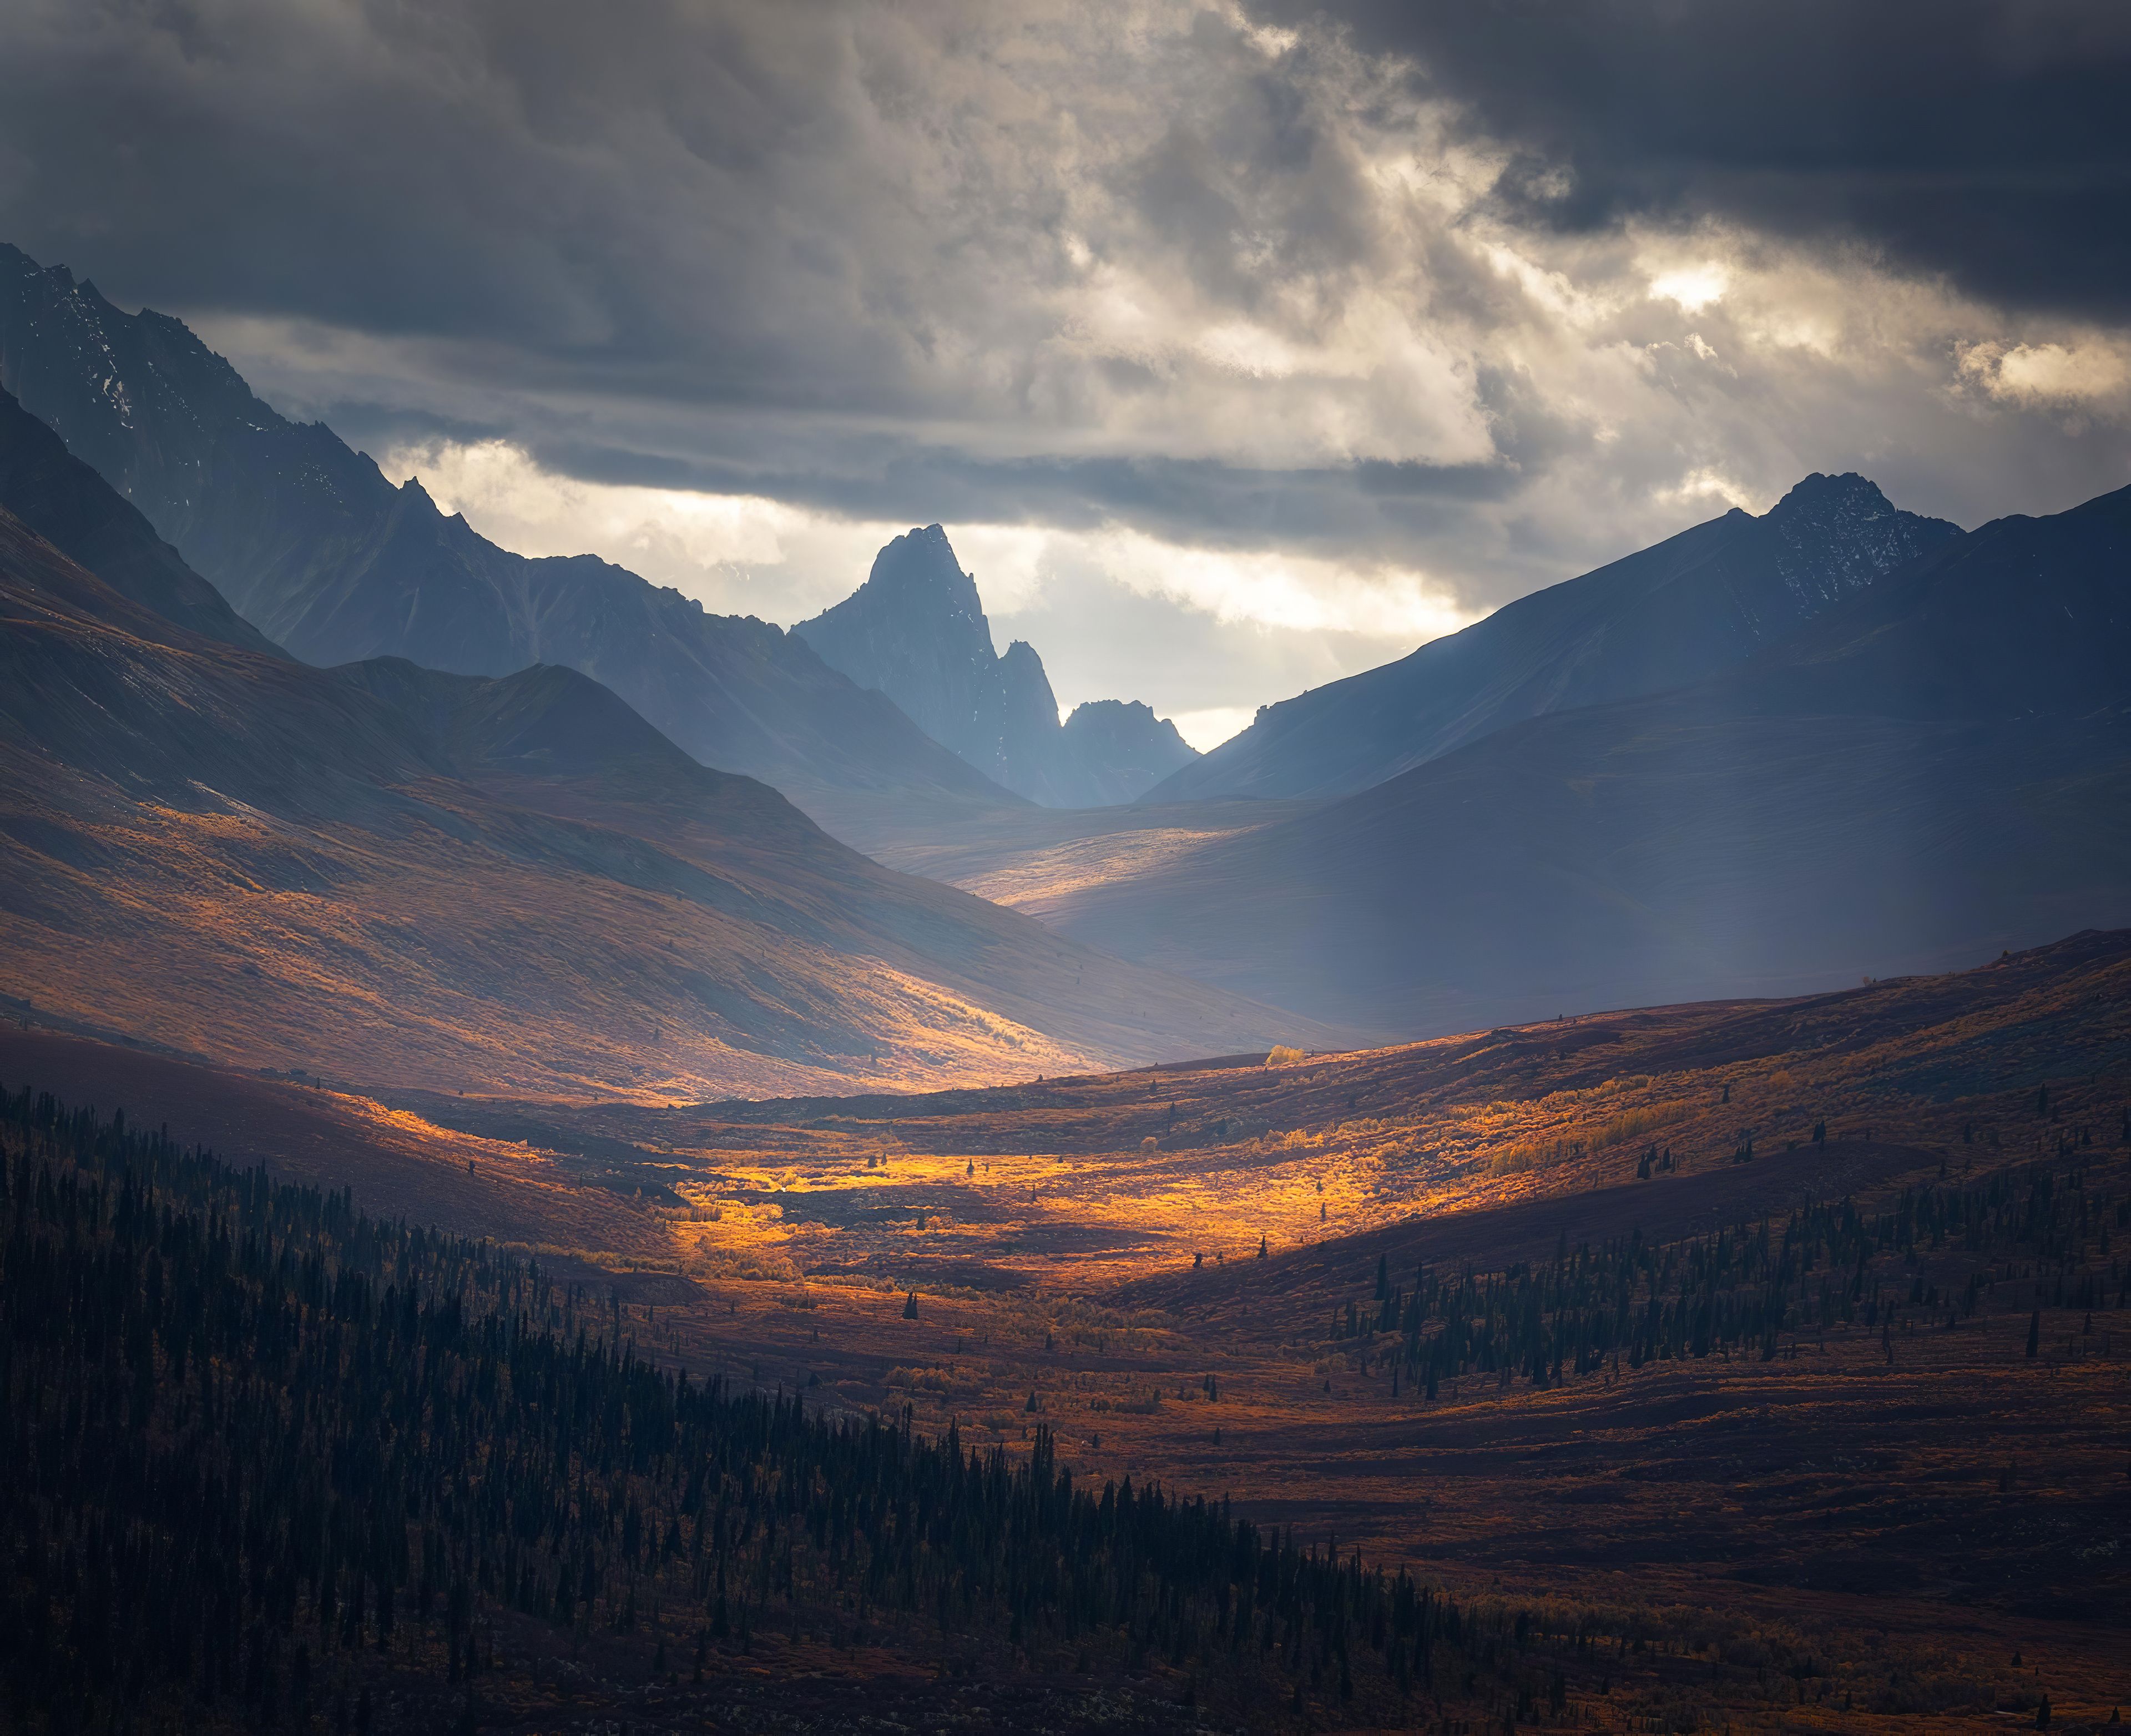 Nền desktop Yukon mang đến cho bạn những cảnh quan đáng nhớ, một nơi để bạn trốn thoát khỏi sự tắc nghẽn của cuộc sống và đắm mình trong vẻ đẹp hoang sơ của thiên nhiên. Hãy để hình ảnh Yukon trở thành nguồn cảm hứng cho công việc của bạn.